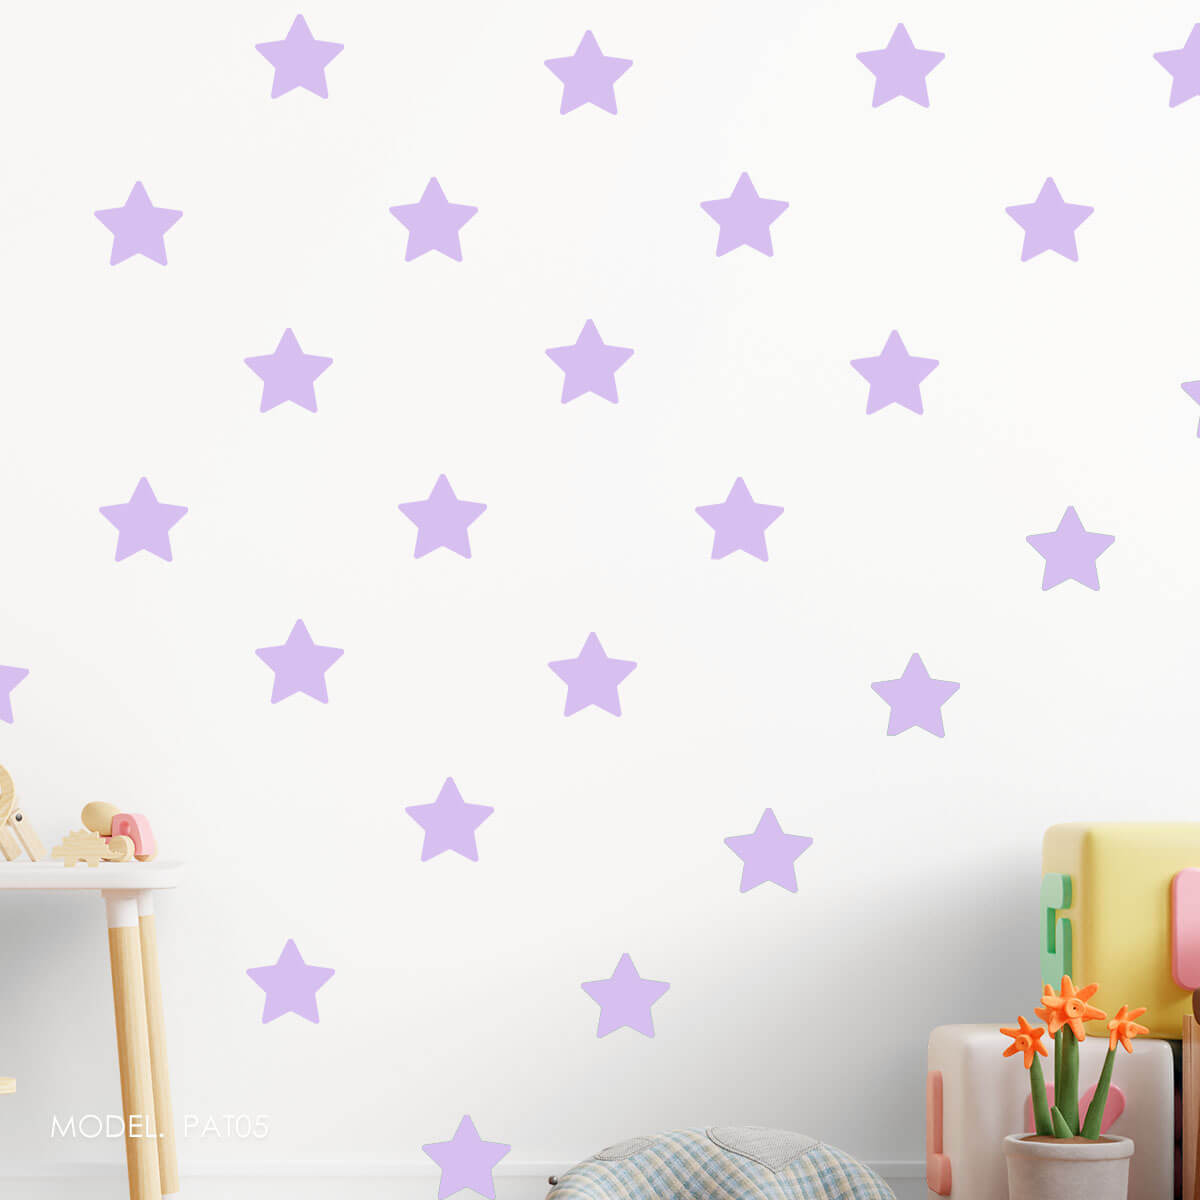 PAT05- Patrón Estrellas Moradas ¡Escoge tu tonalidad de morado favorito!